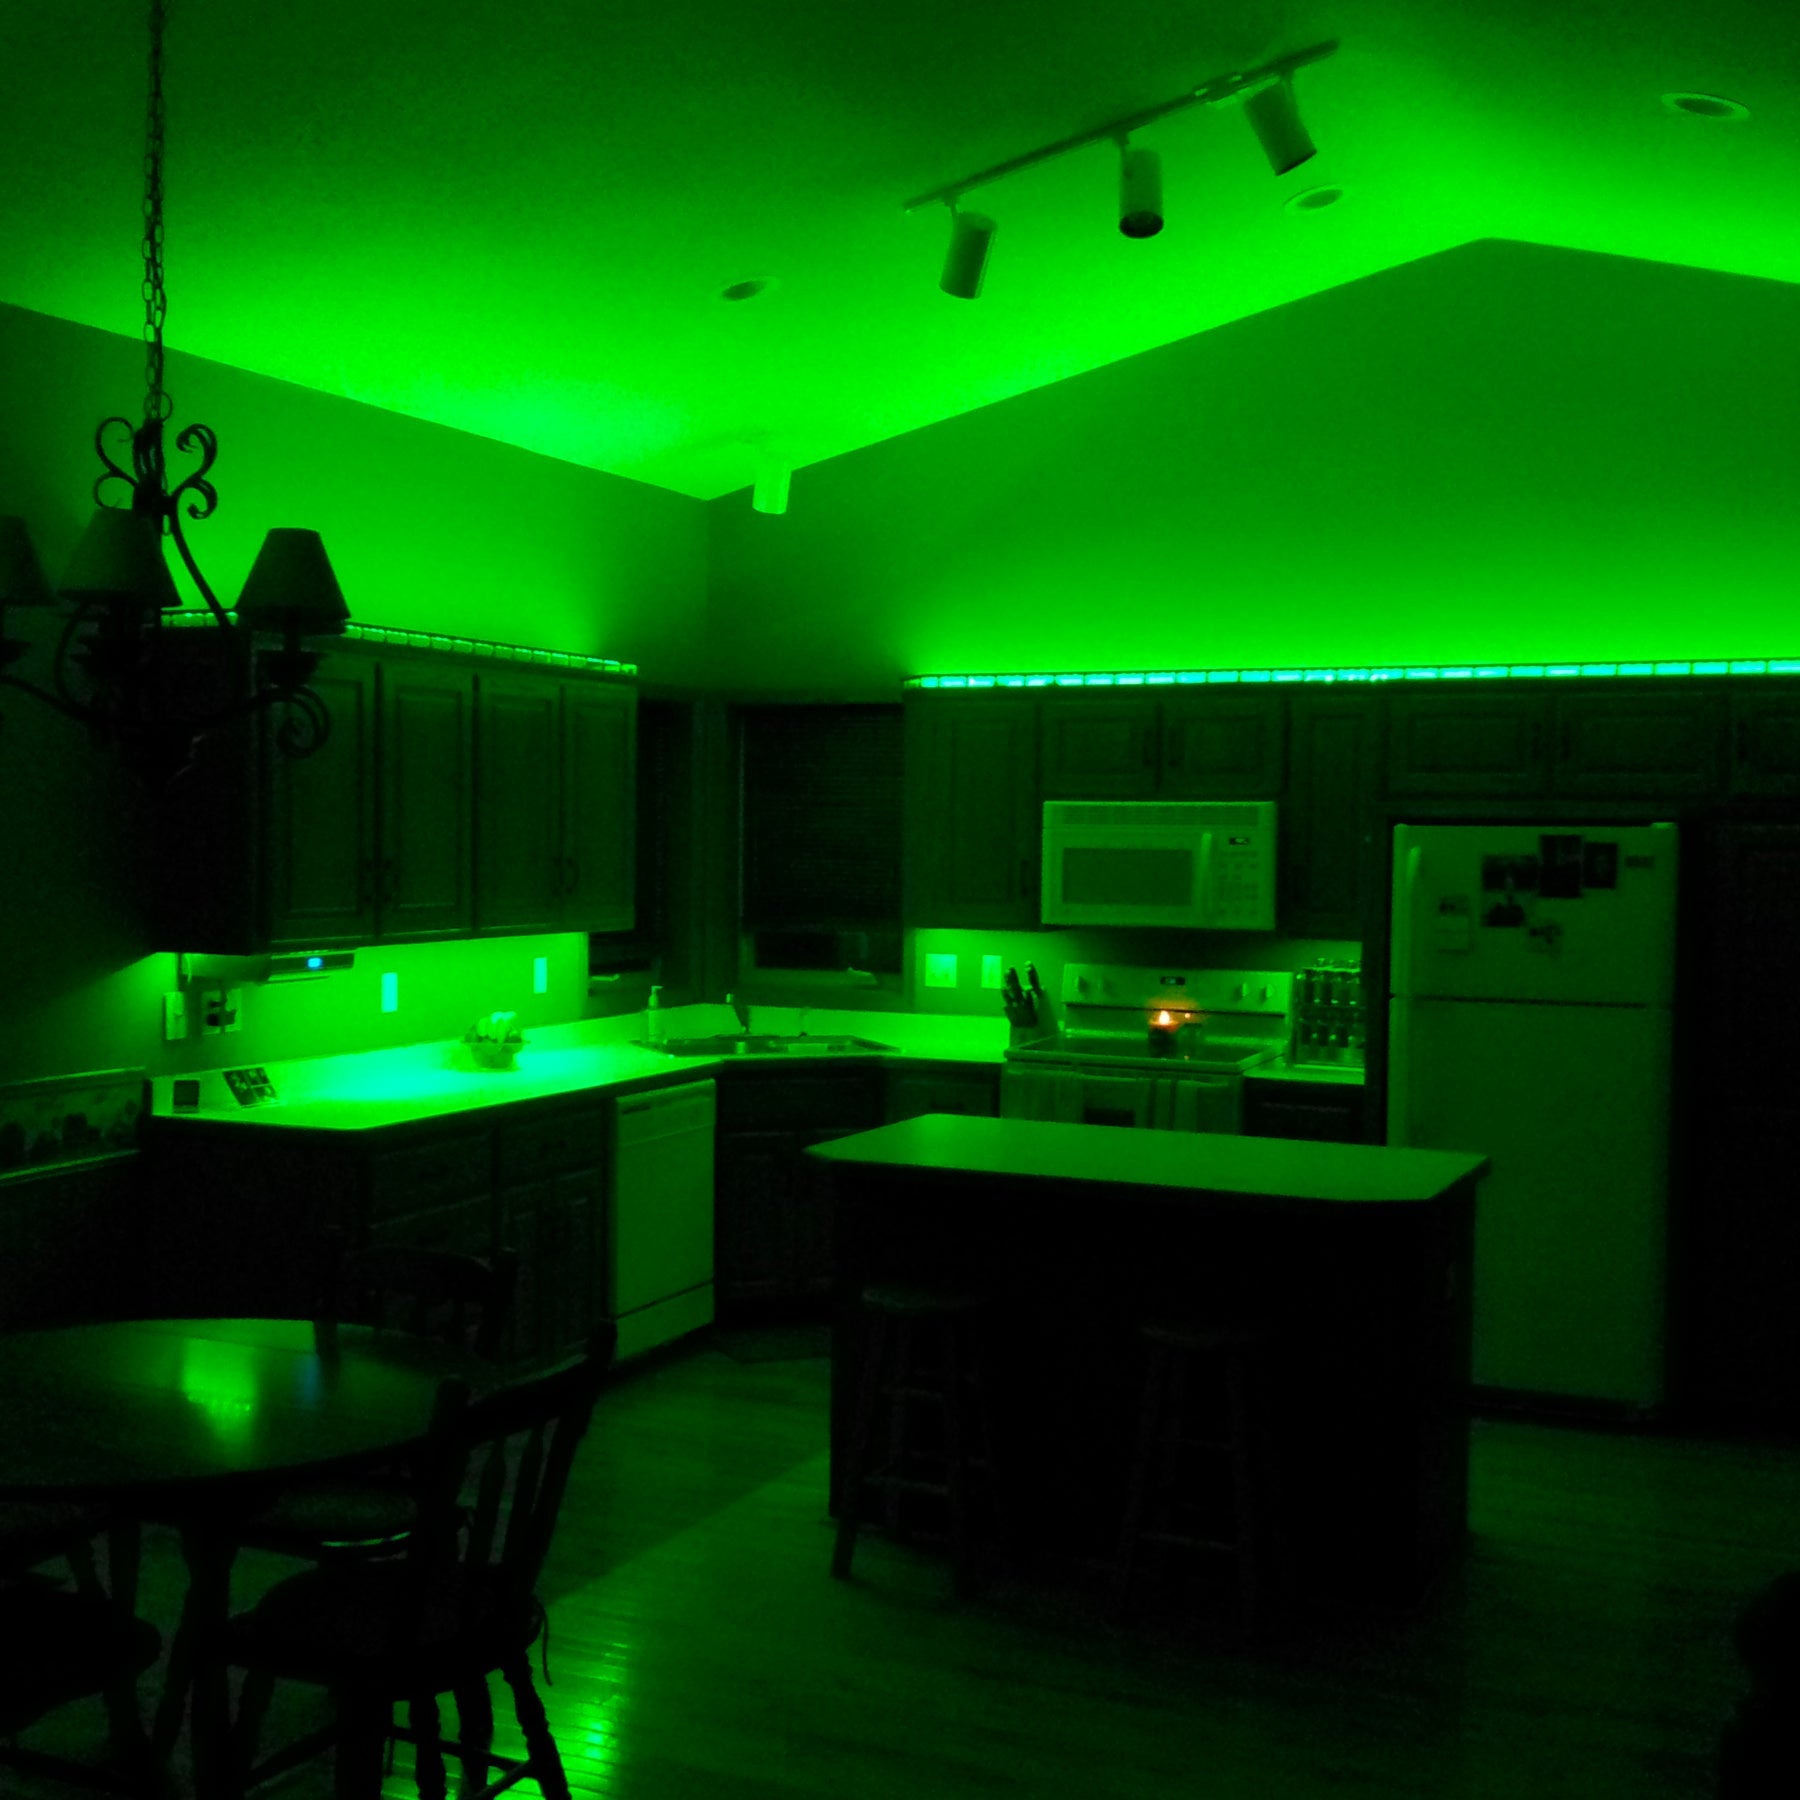 LED Strip Lights, IP20, 16.4ft, Dimmable, 12V, SMD 2835, 120 leds/Meter,  UL, RoHS Listed, LED Lights for Bedroom, Kitchen, Home Decoration